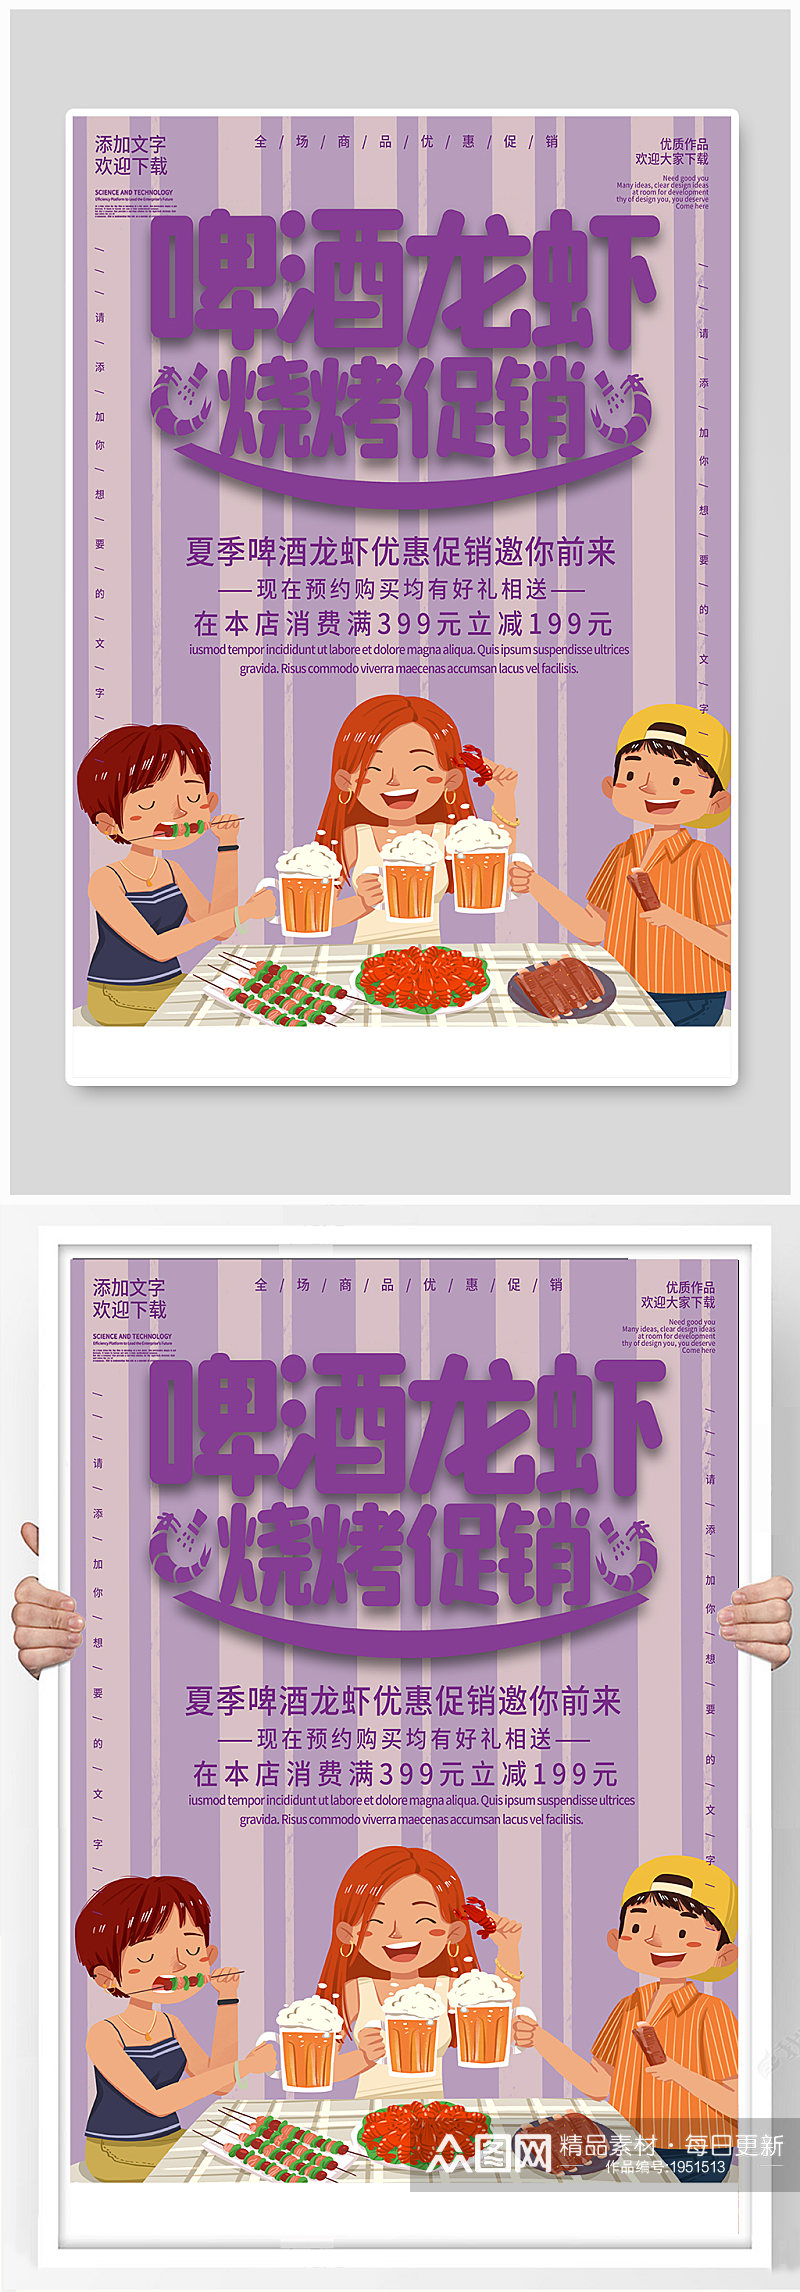 紫色简约清新商务啤酒龙虾烧烤活动促销海报素材